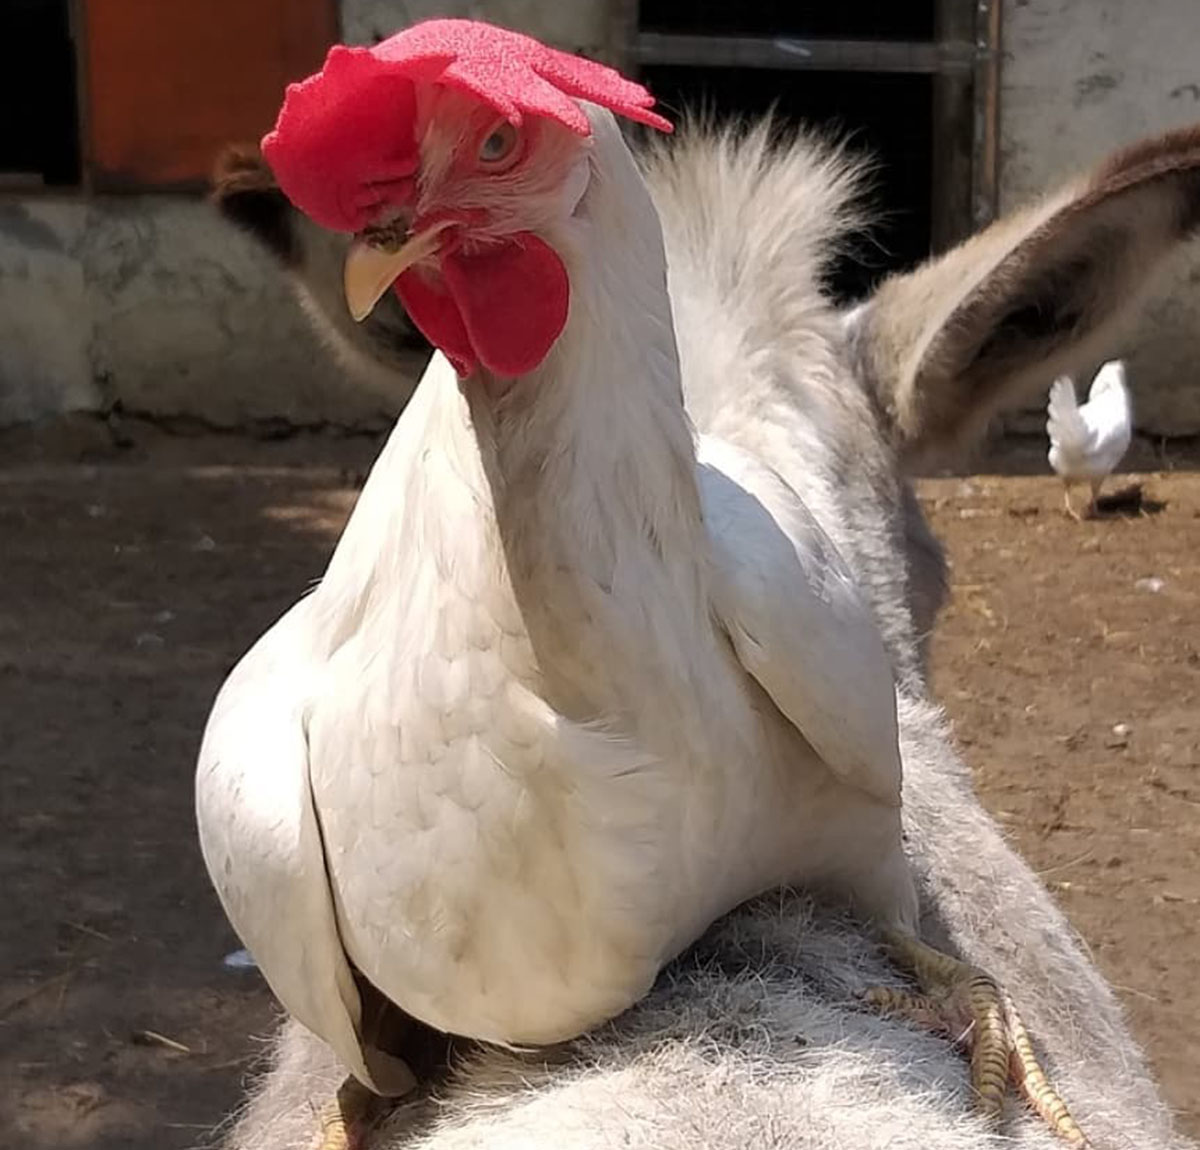 Avete mai visto una gallina in groppa ad un asinello?